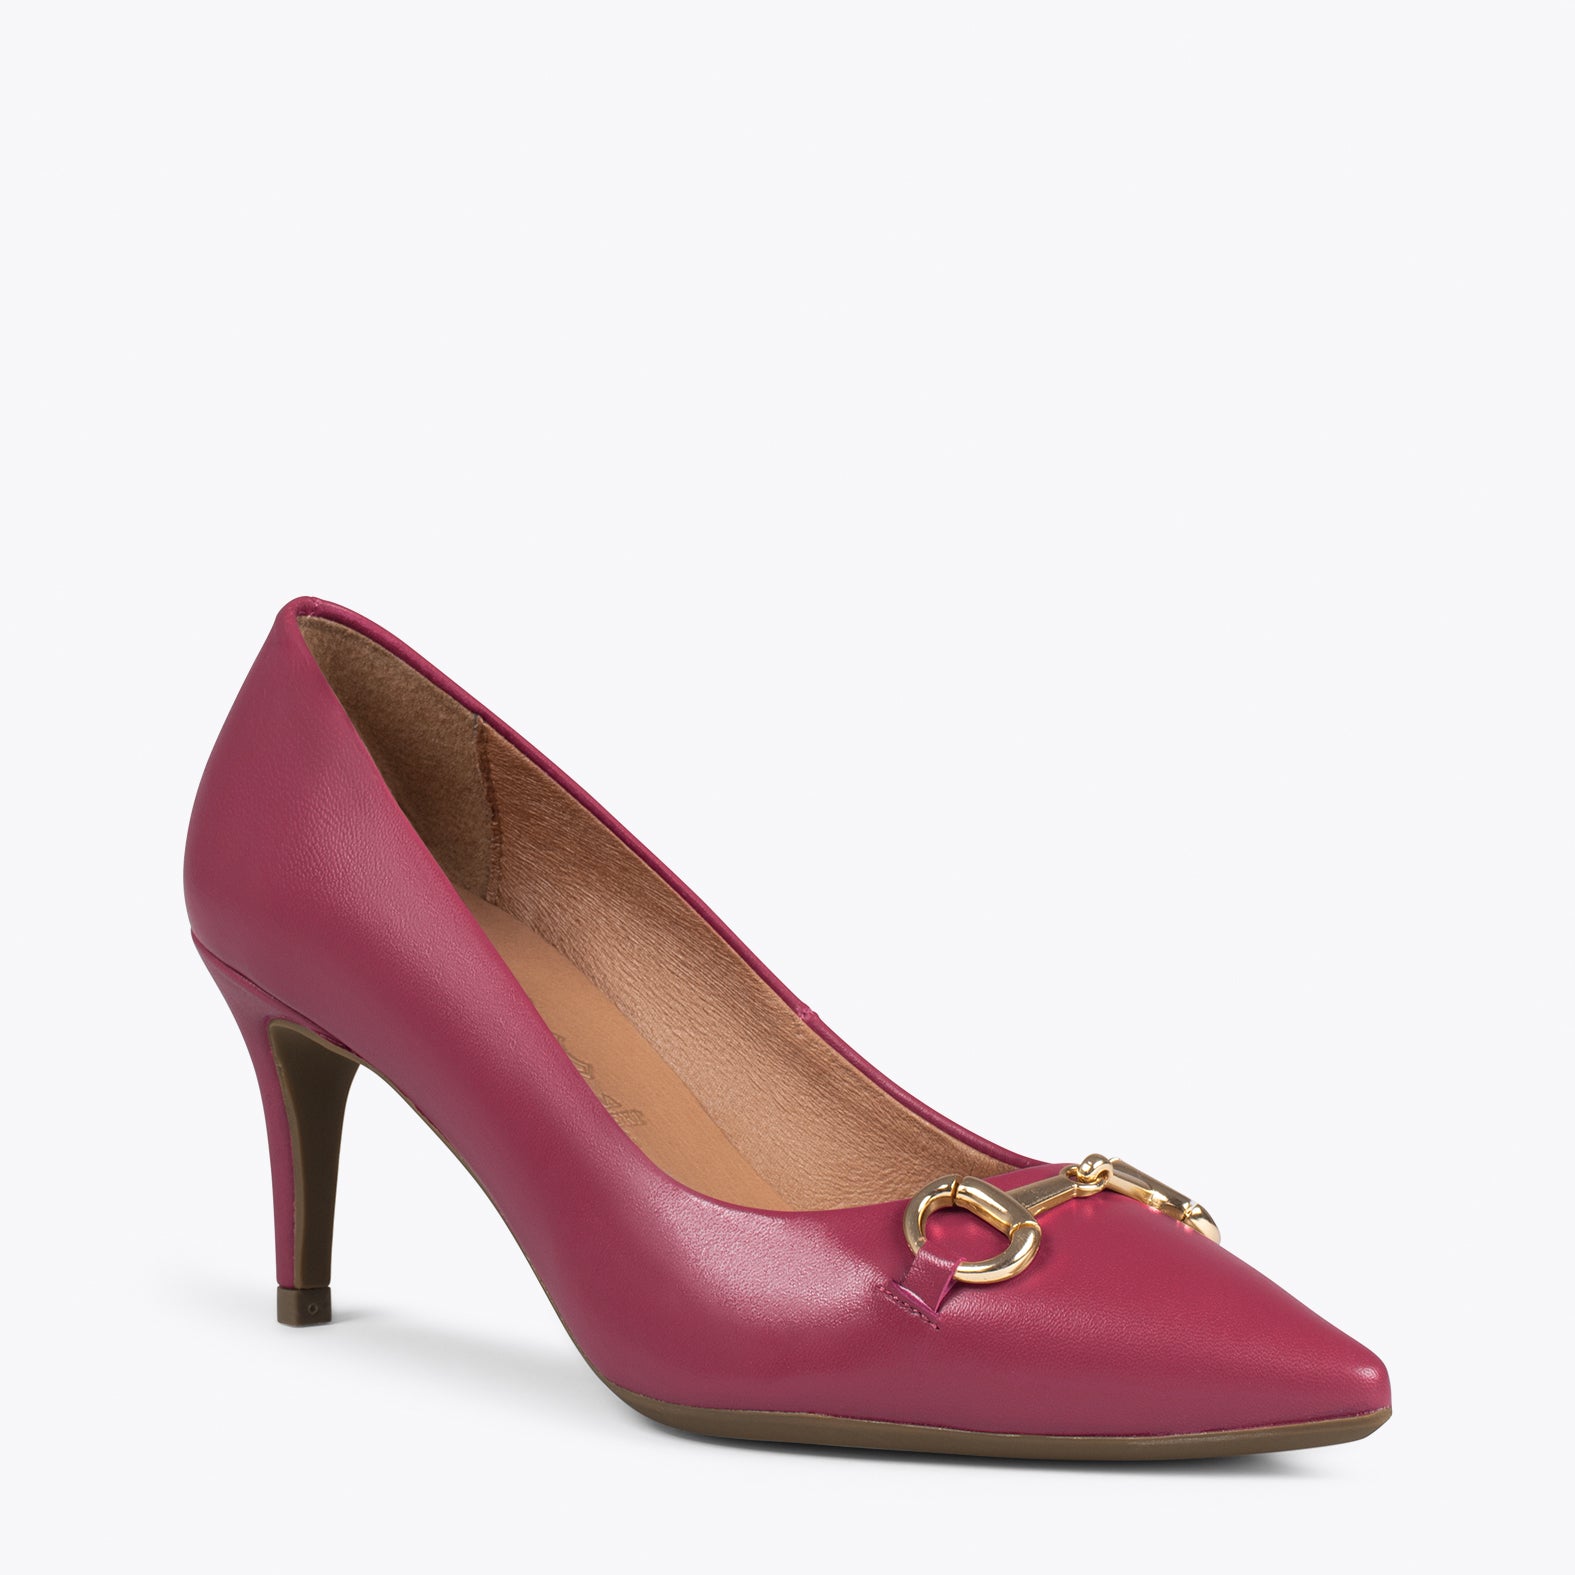 ELEGANCE – BURGUNDY stiletto heel with metallic detail